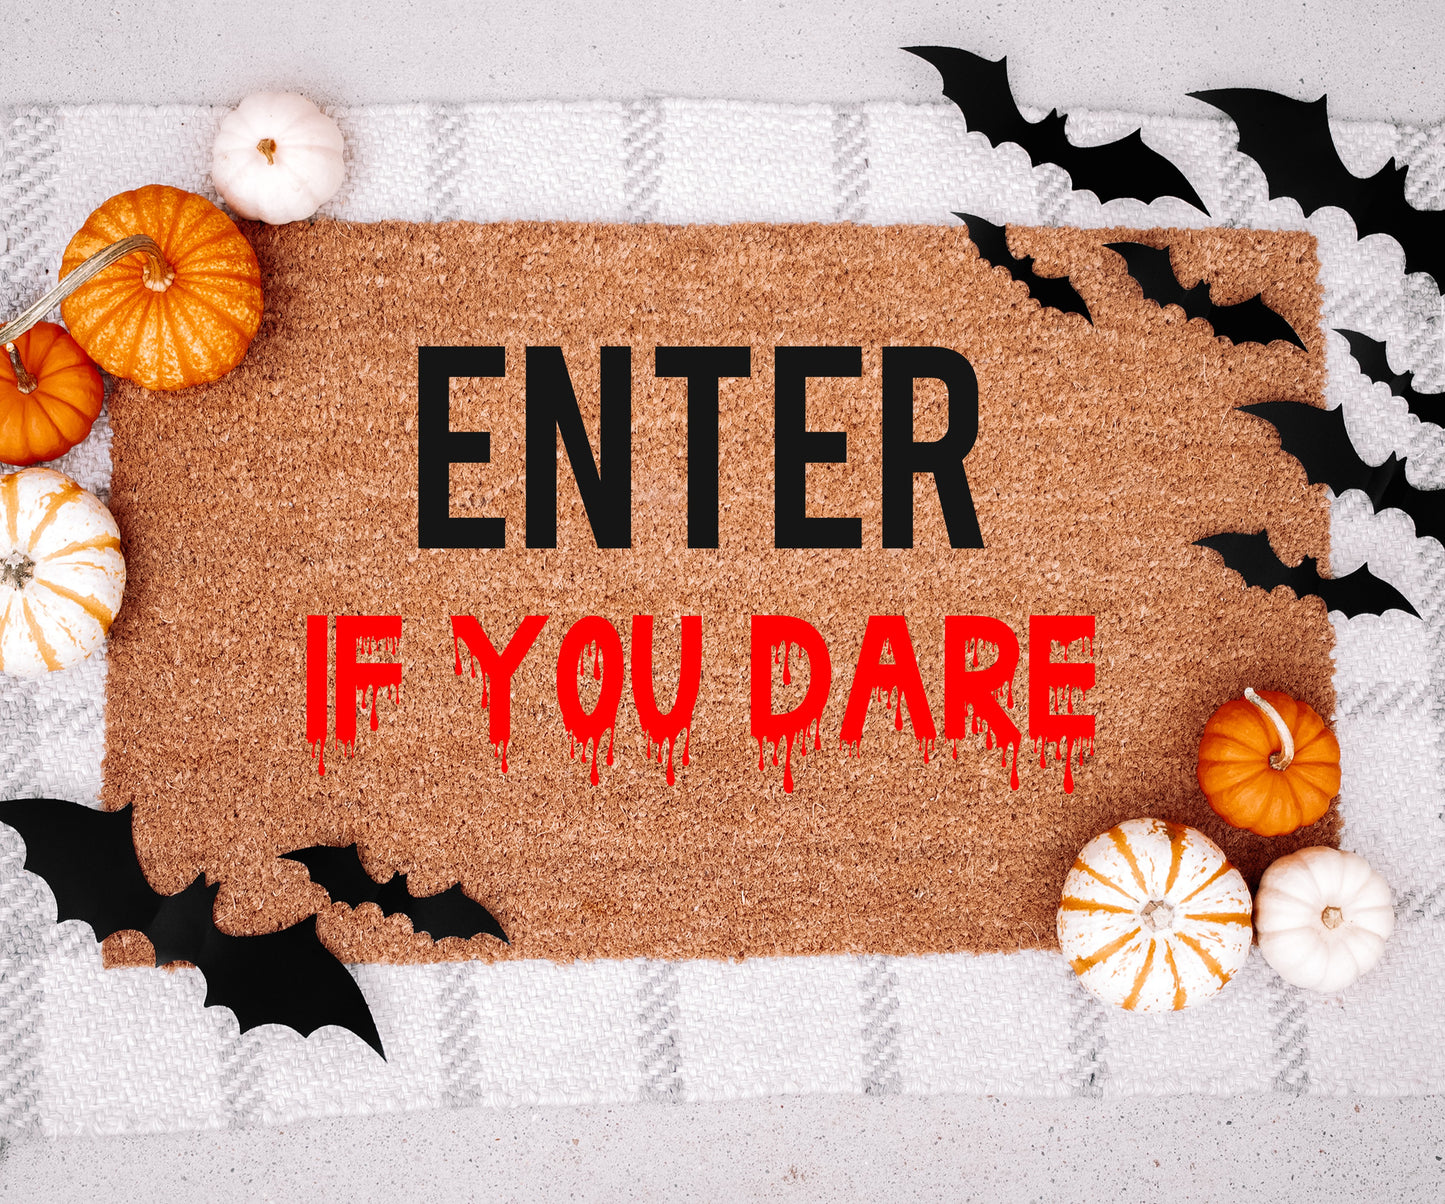 Enter If You Dare Doormat